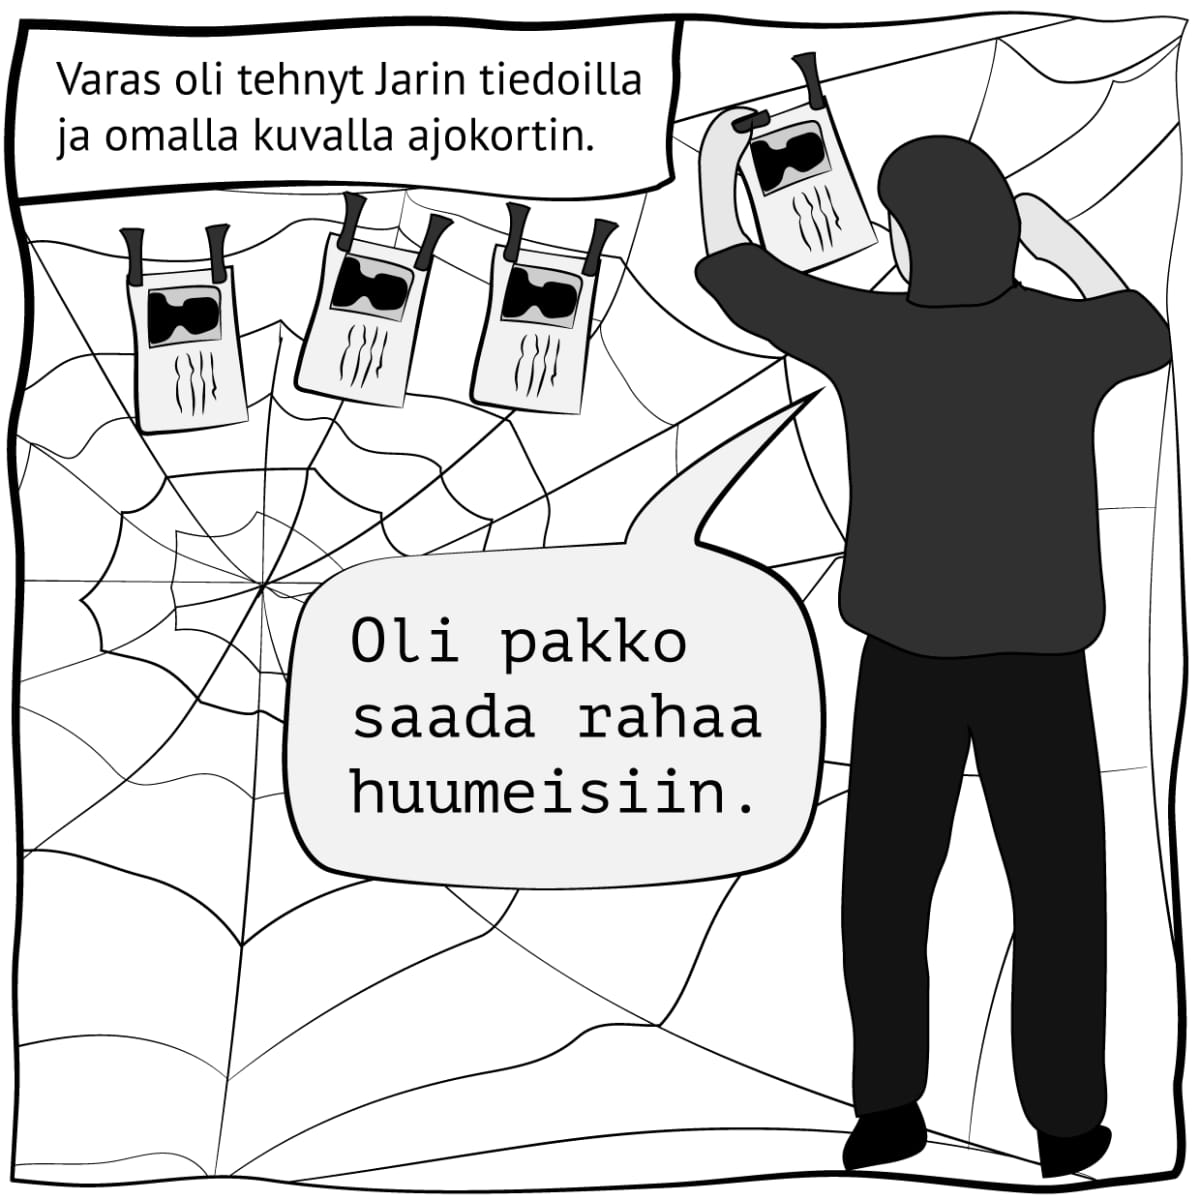 Piirroskuva, jossa lukee: "Varas oli tehnyt Jarin tiedoilla ja omalla kuvalla ajokortin". Kuva: Stina Tuominen / Yle